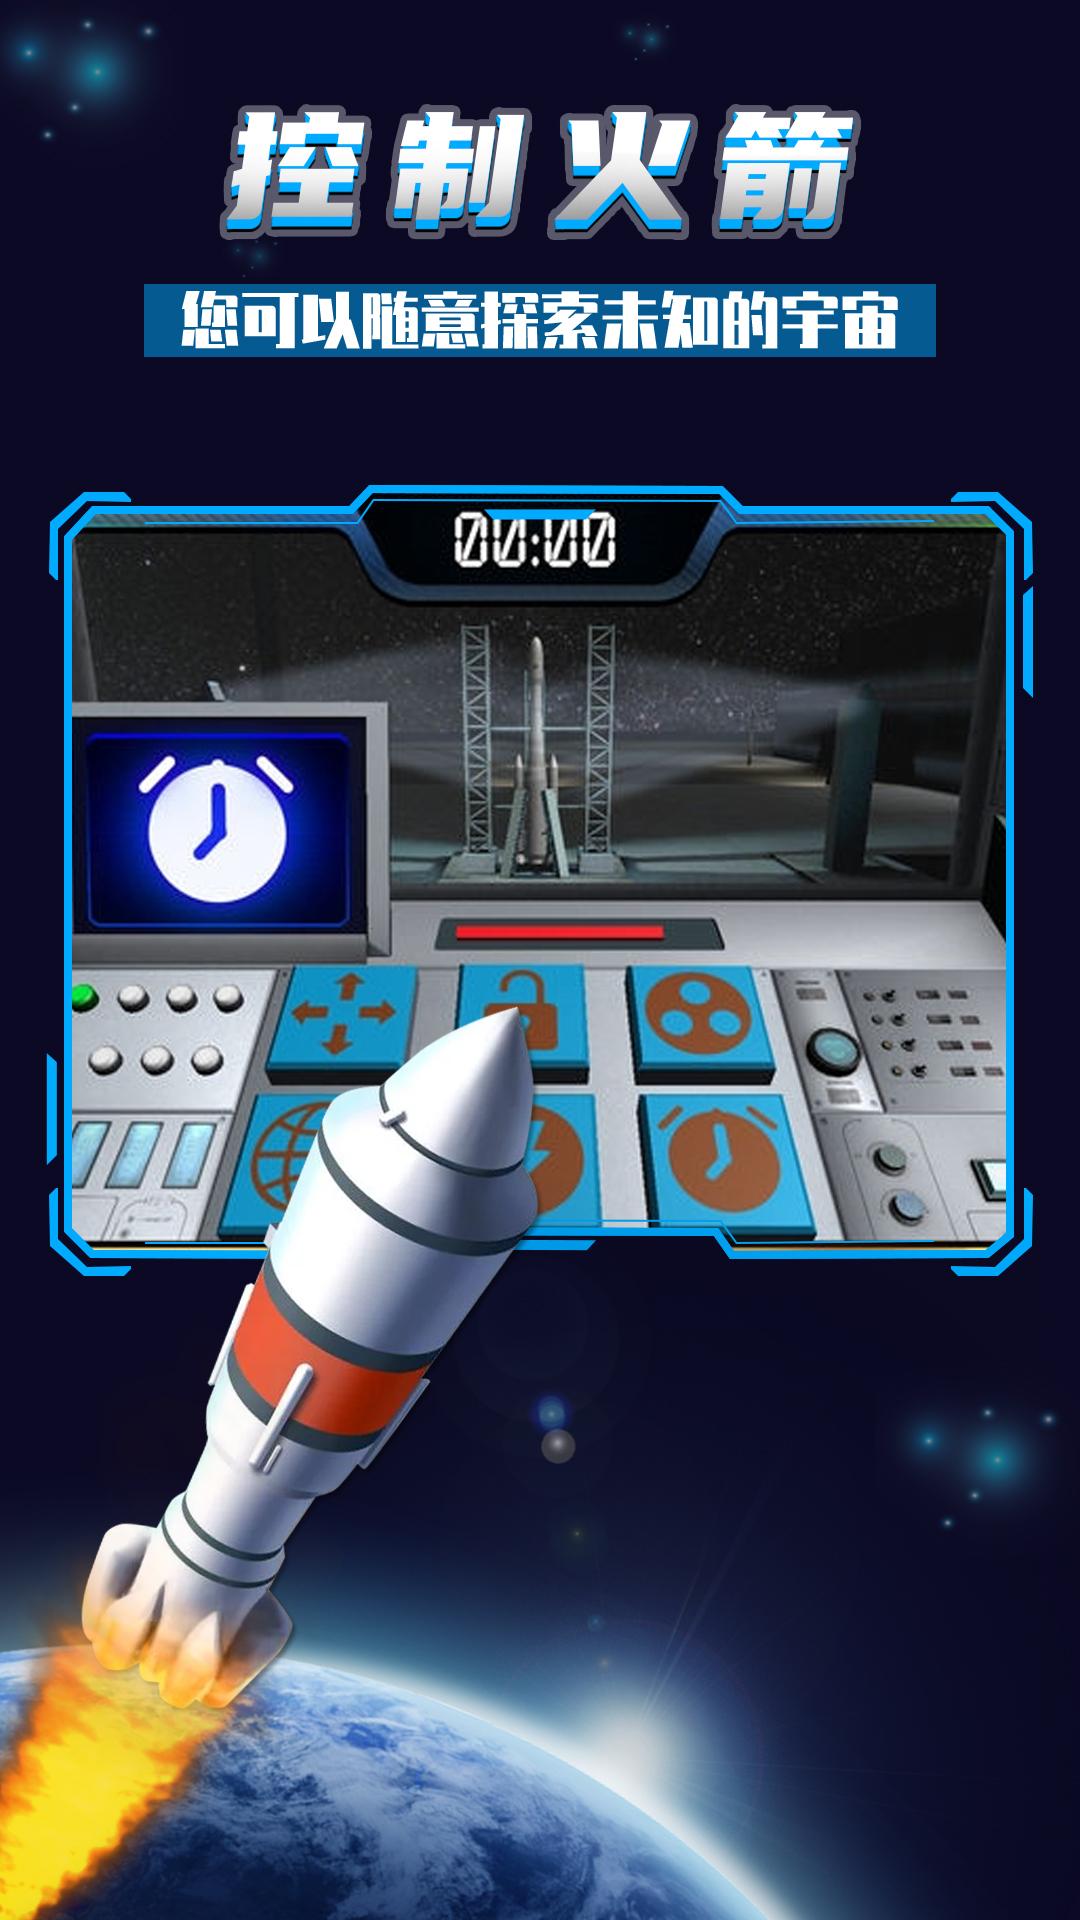 阿波罗火箭发射视频_火箭发射波罗手机游戏叫什么_阿波罗火箭发射手机游戏